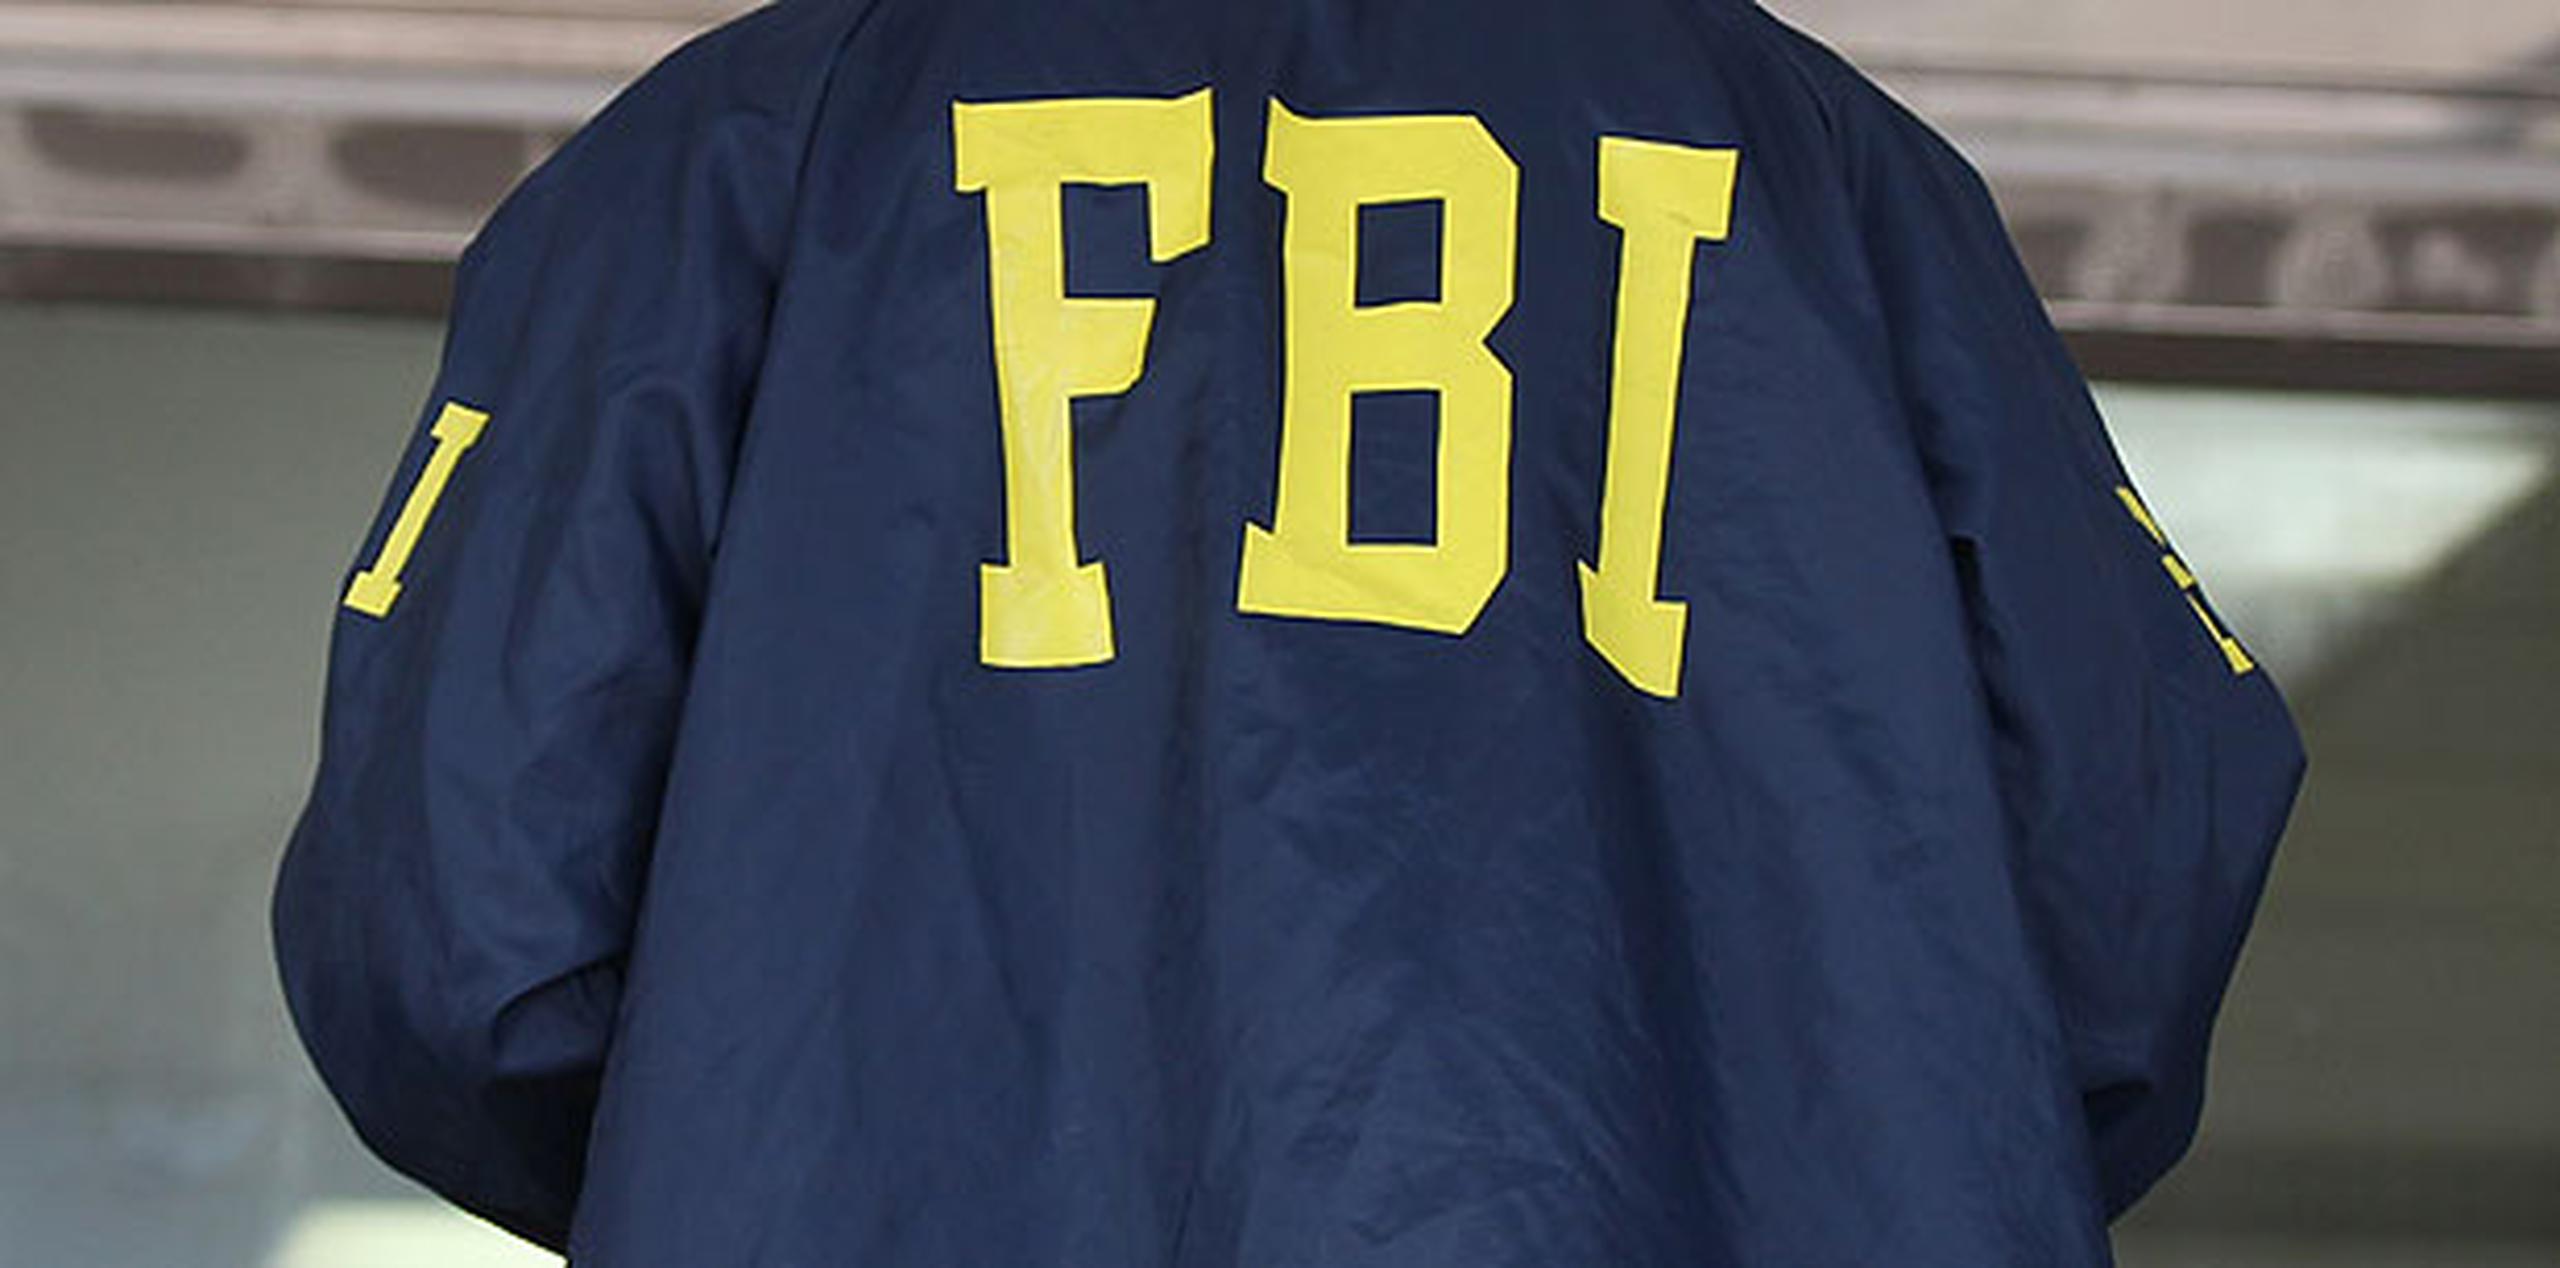 La pesquisa sobre el asalto bancario está en manos del Negociado Federal de Investigaciones (FBI por sus siglas en inglés). (Archivo)